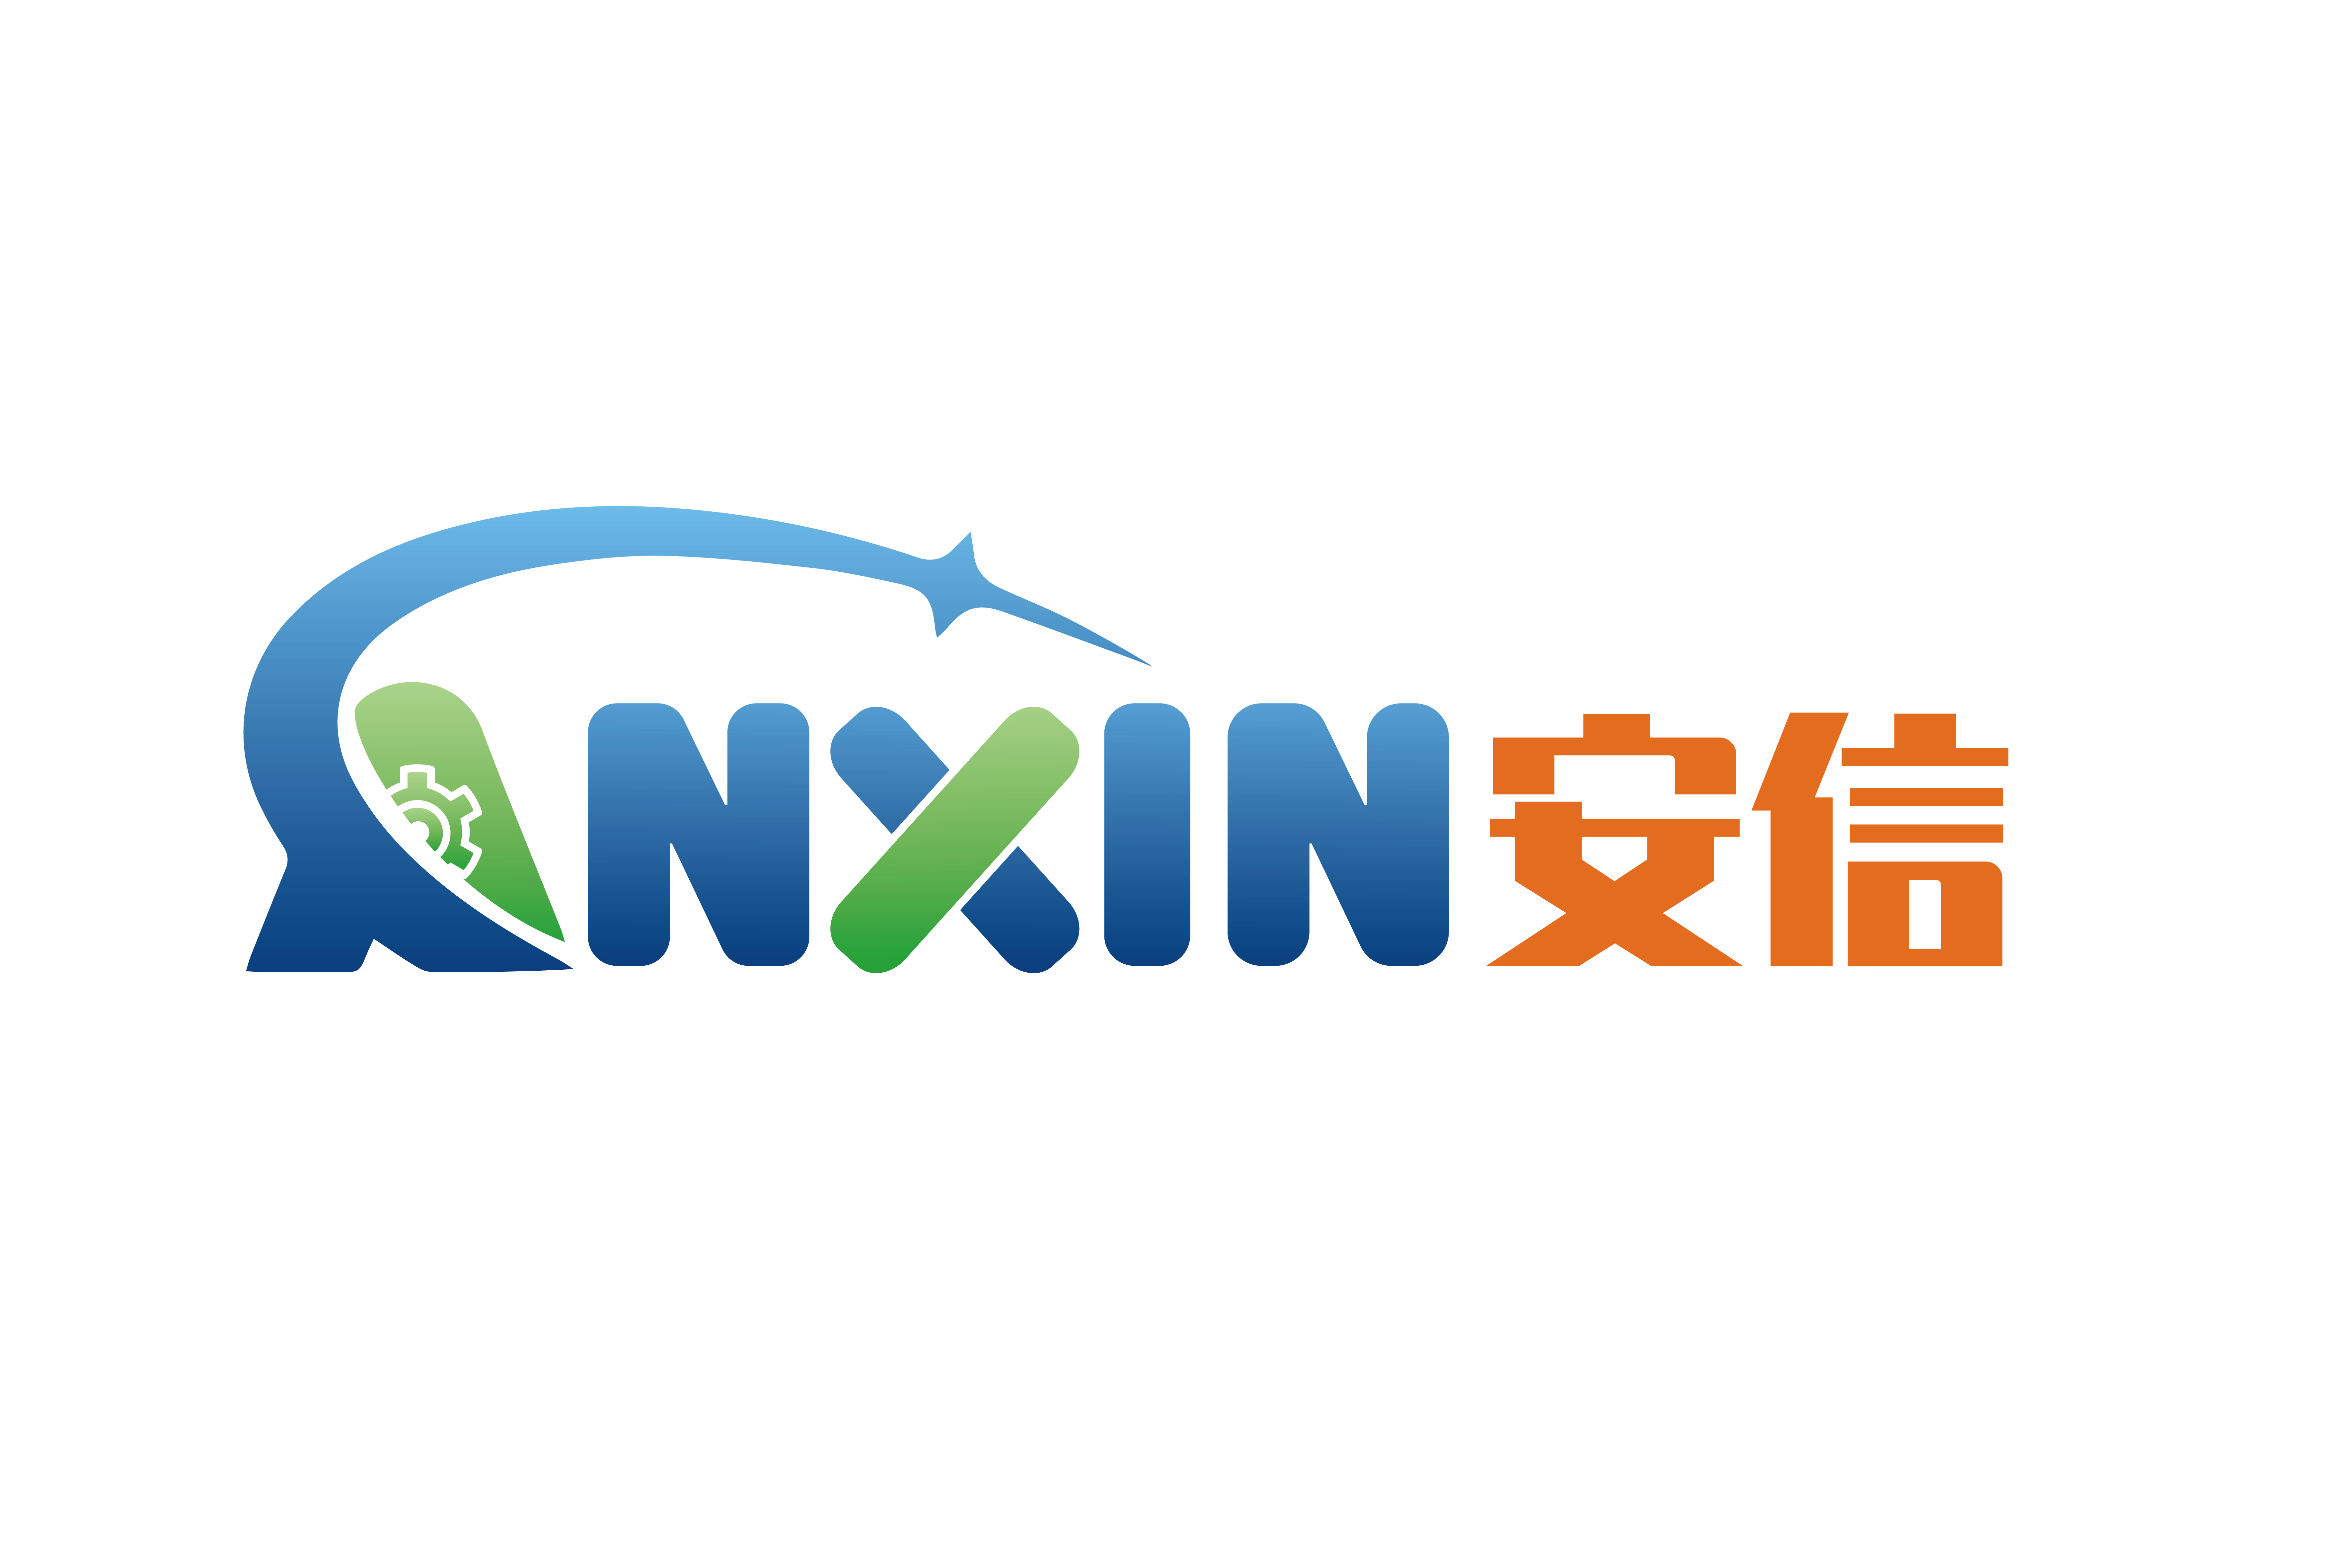 Anxin logotipi